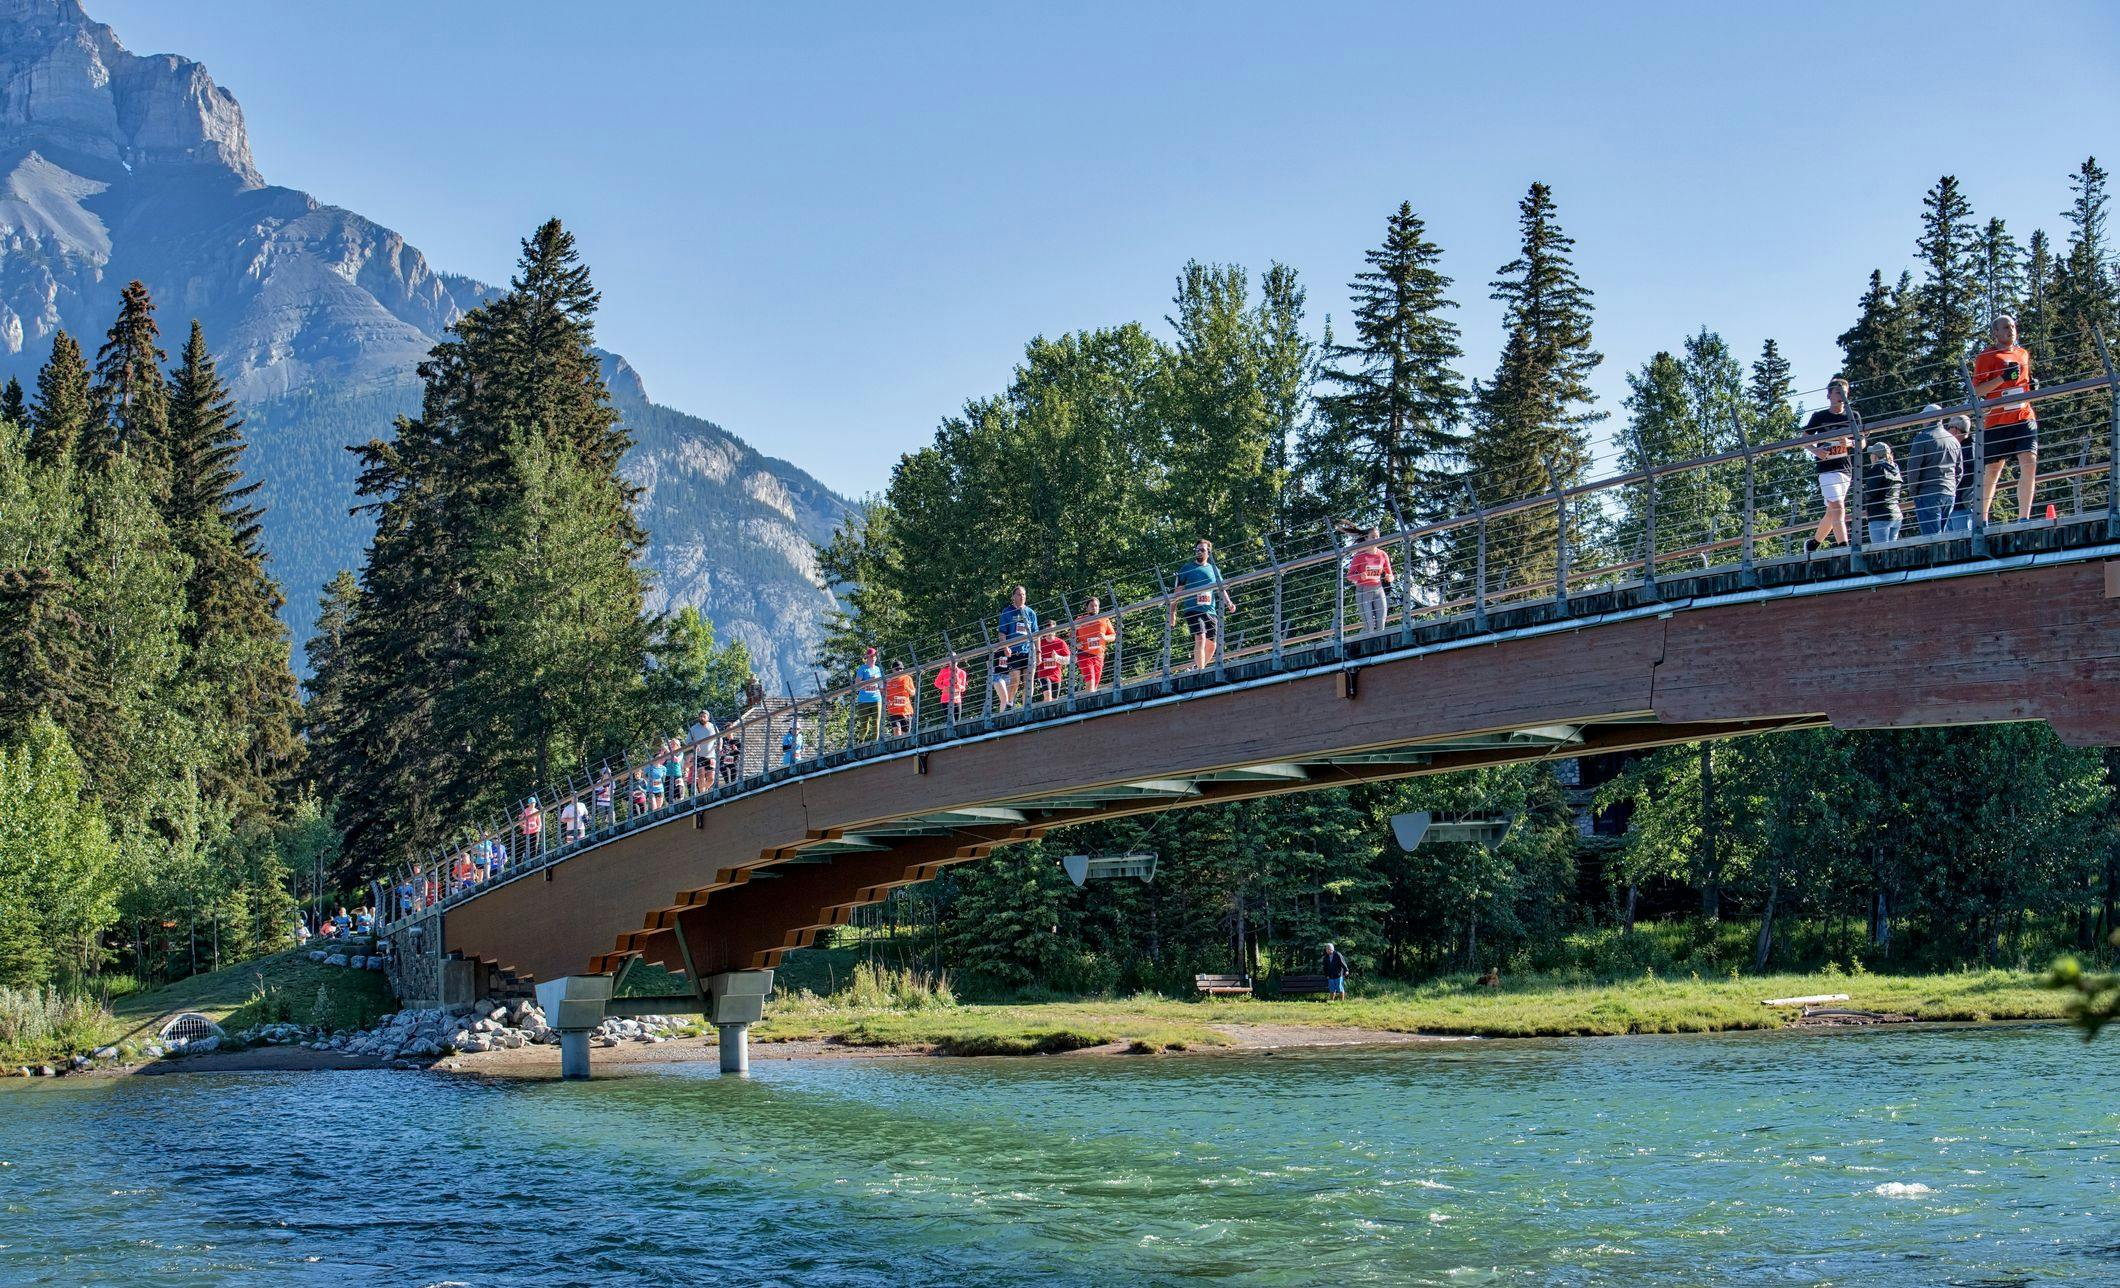 Running along the Banff pedestrian bridge